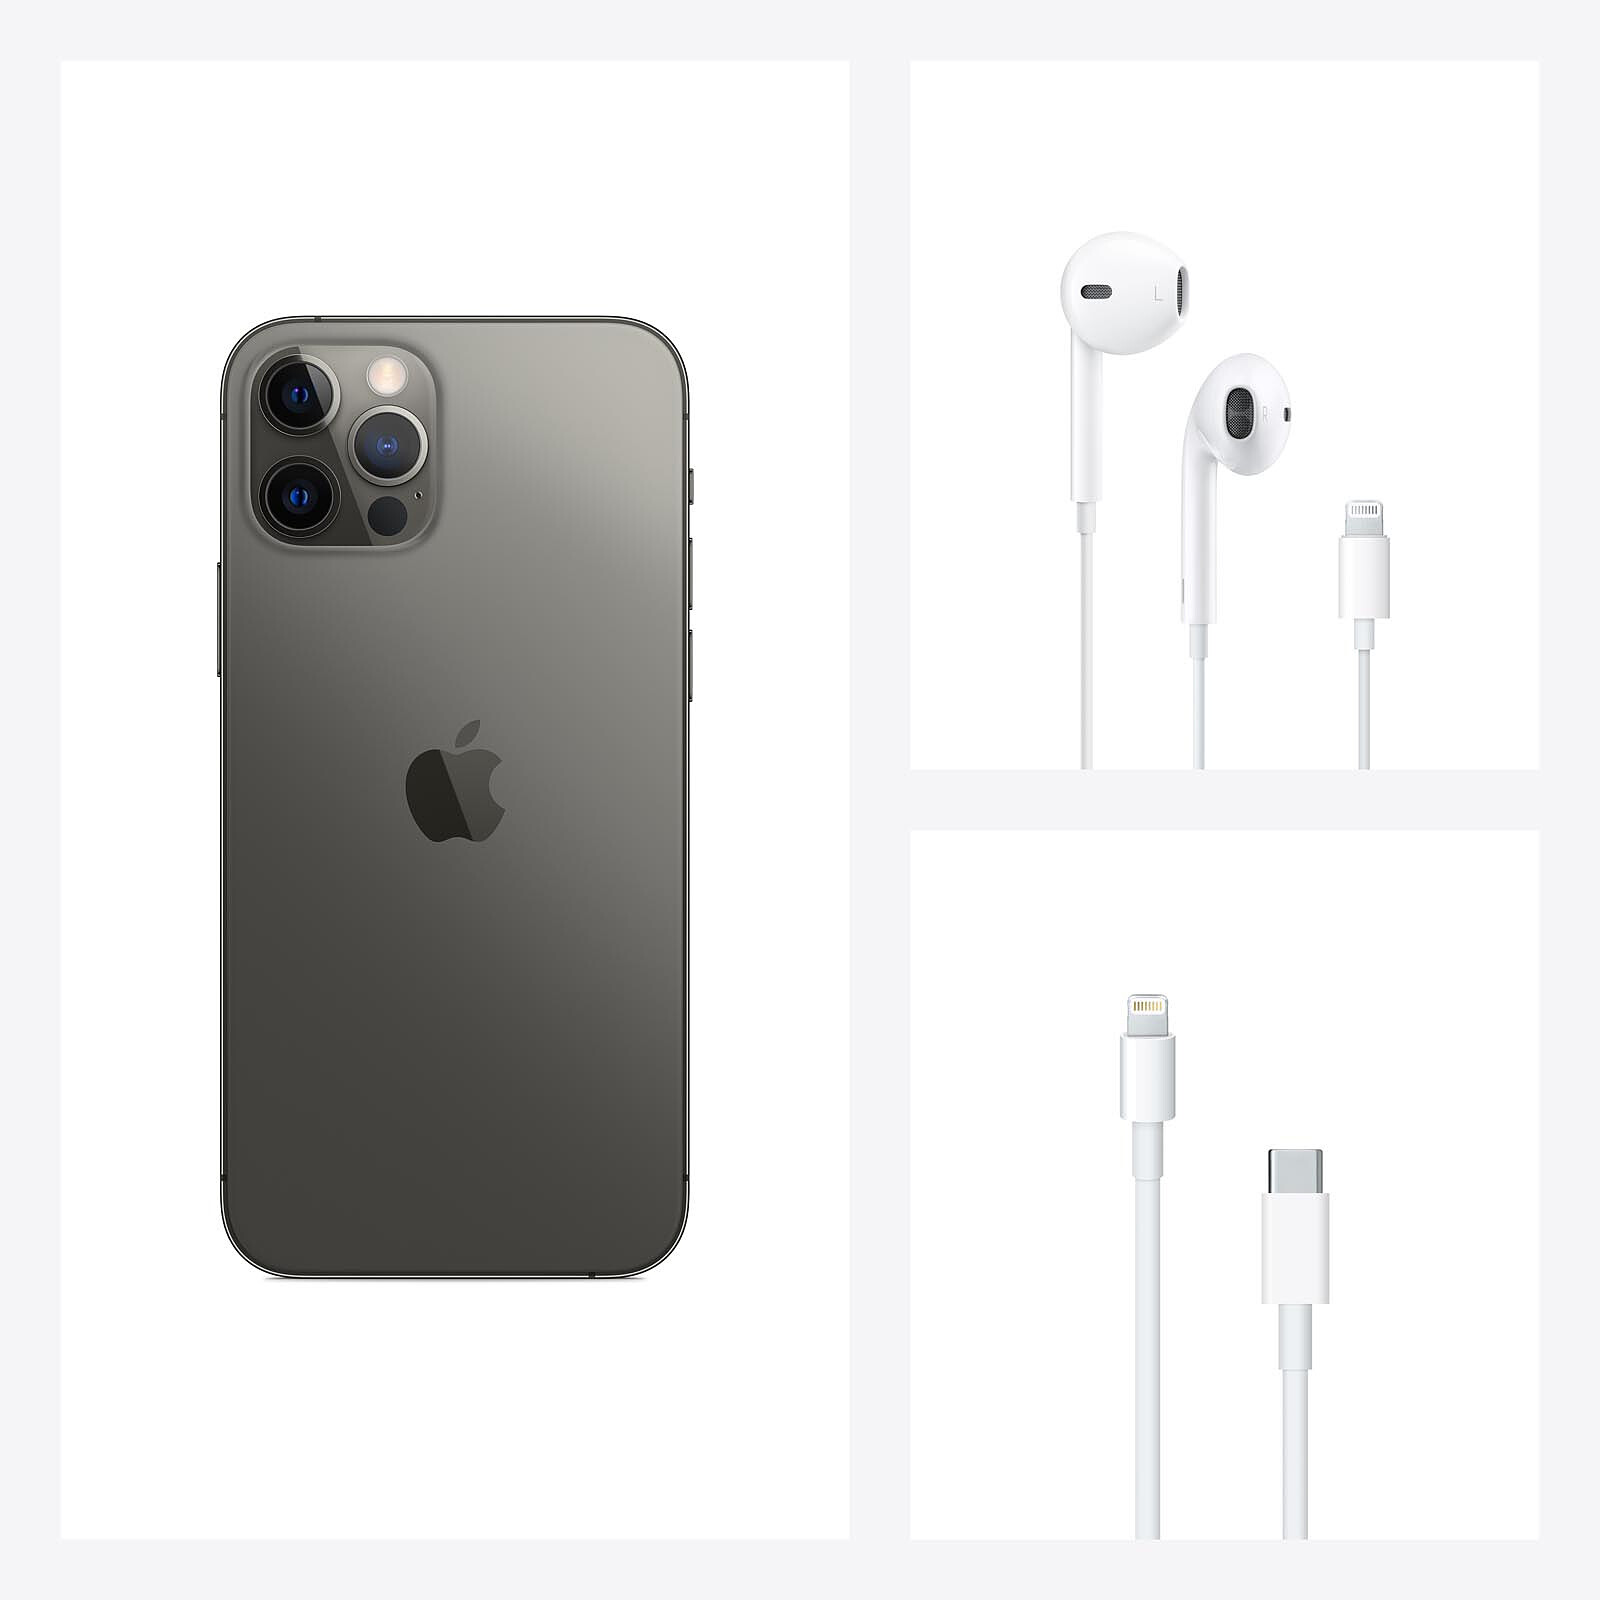 Apple Iphone 12 Pro Max 128gb Grafite Cellulare Smartphone Apple Su Ldlc